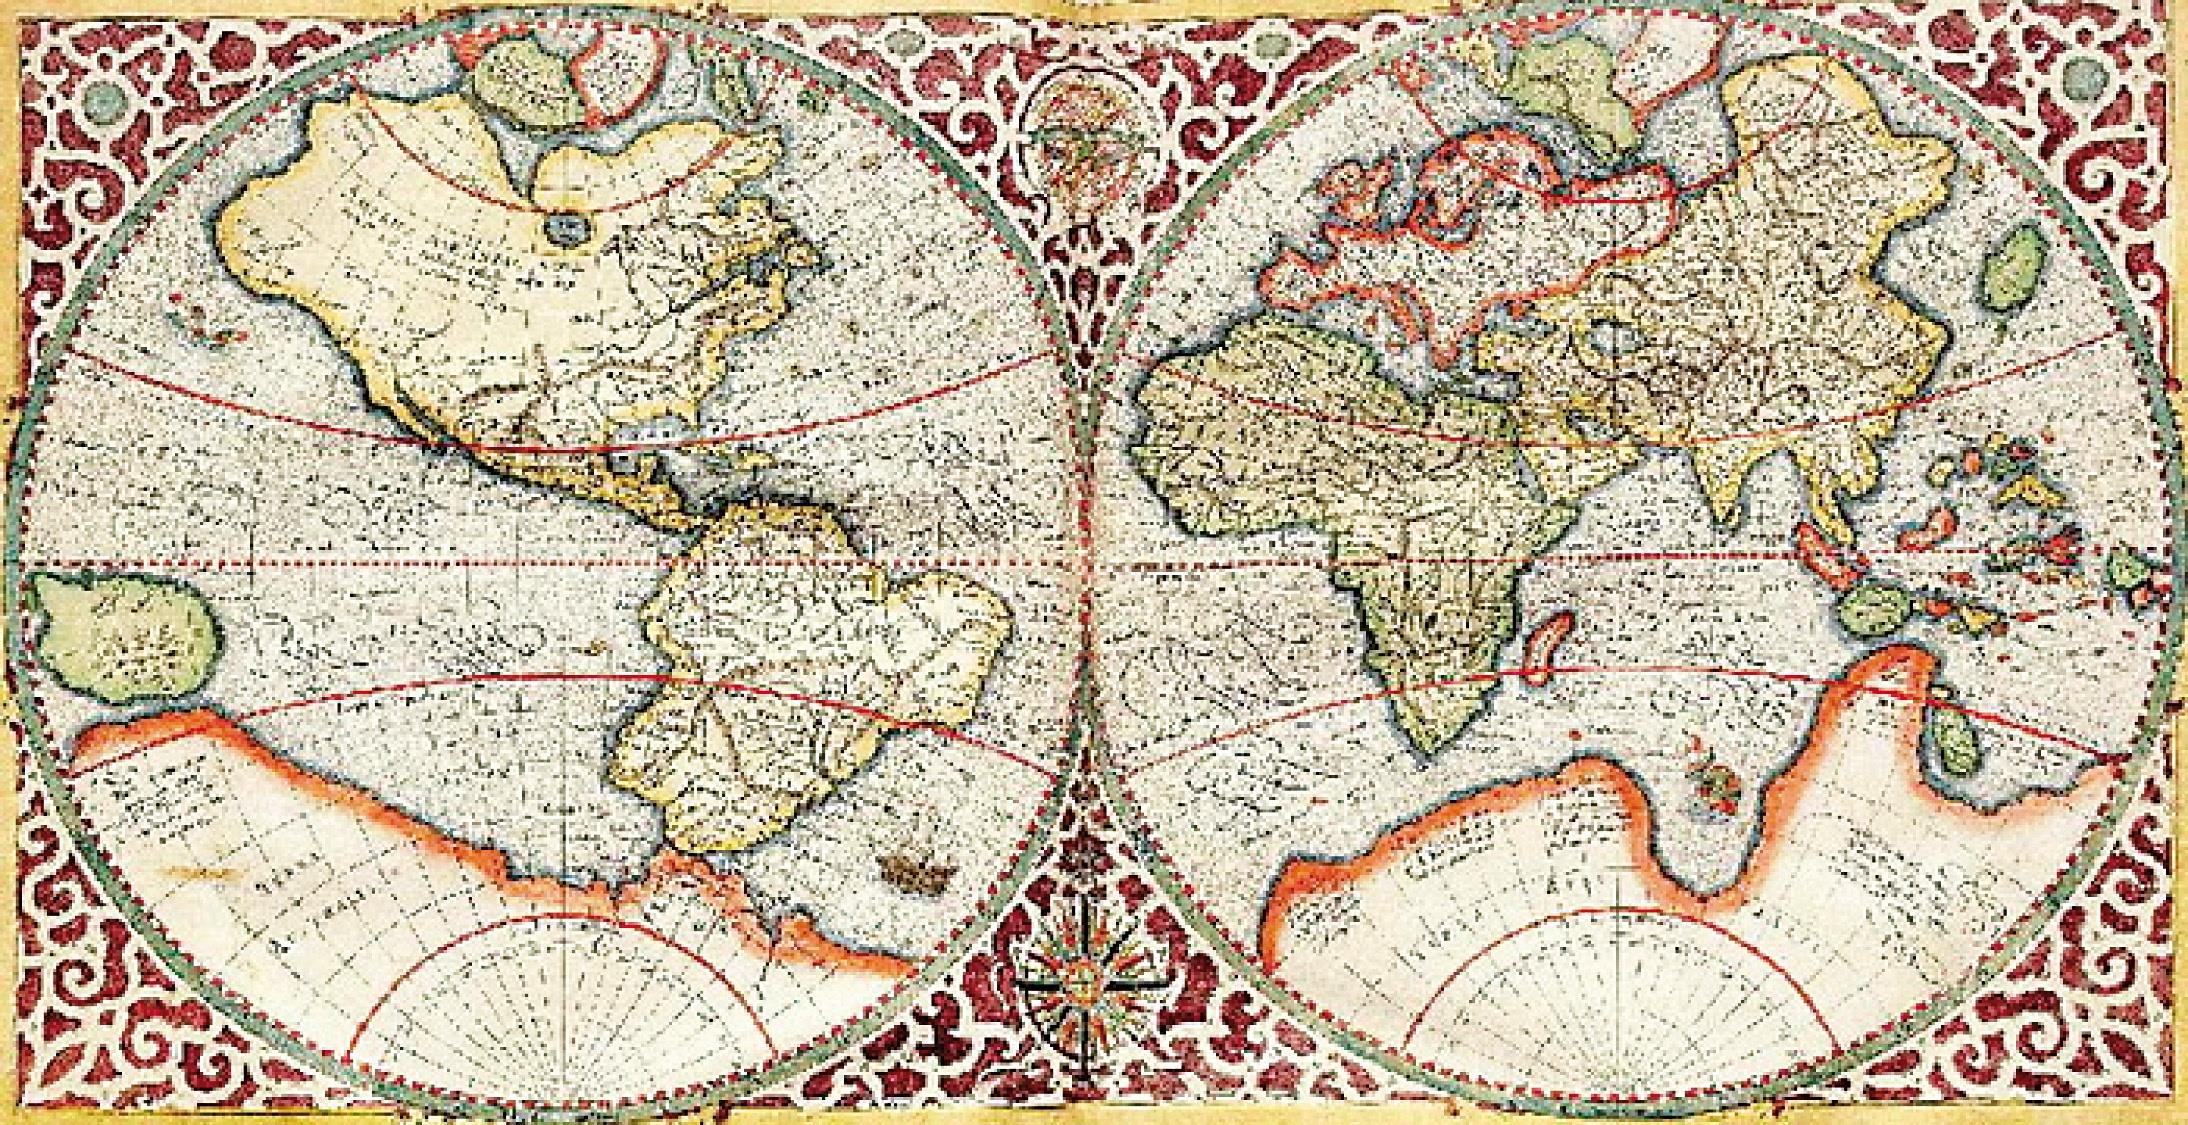 História Mapa produzido em 1578 por Gerard de